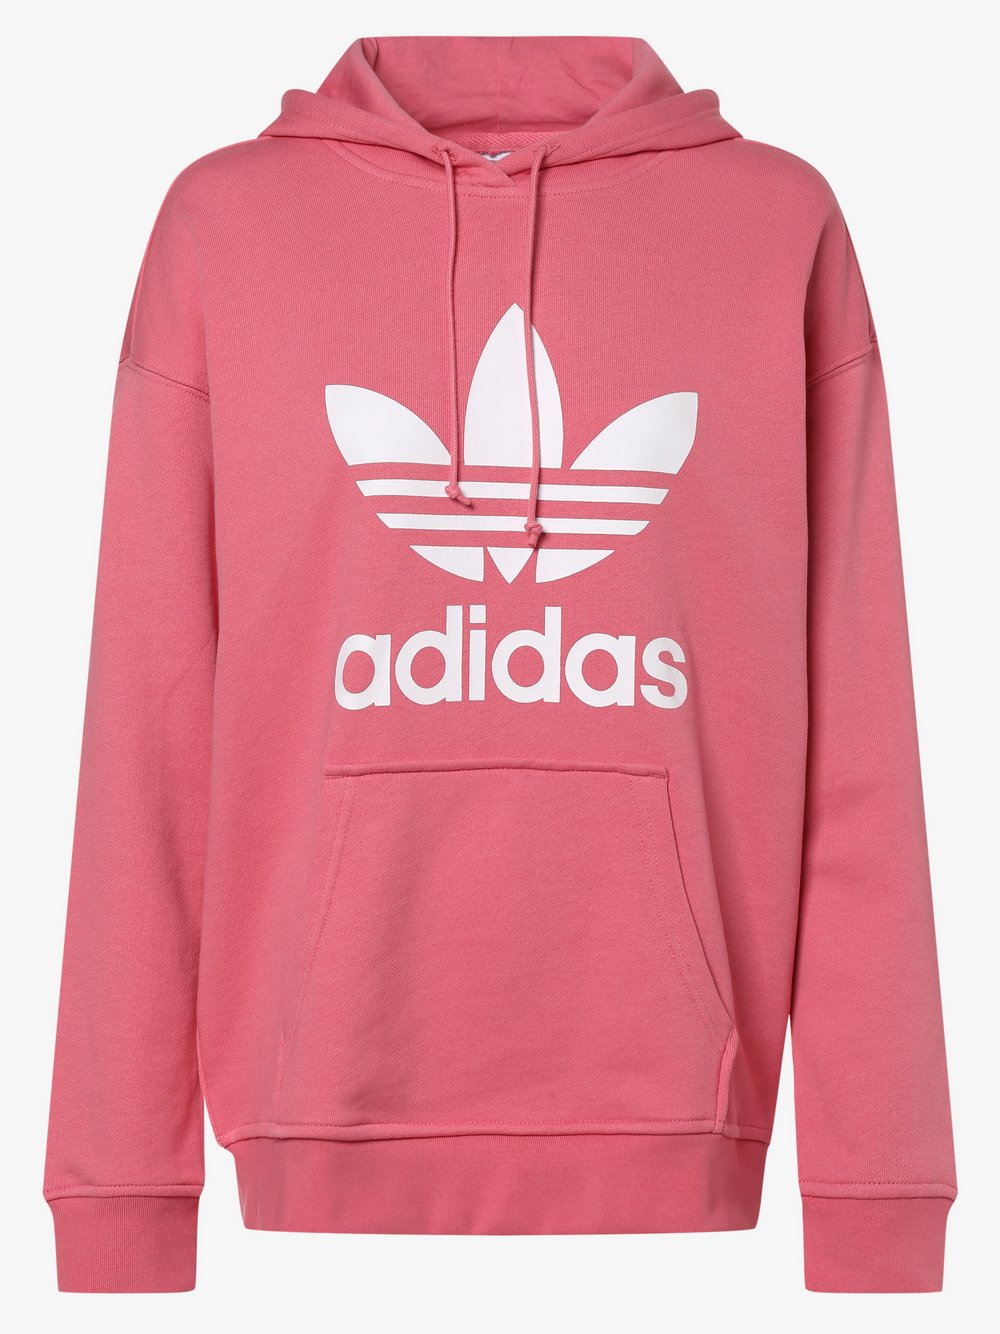 Adidas Originals - Damska bluza z kapturem, różowy|wyrazisty róż